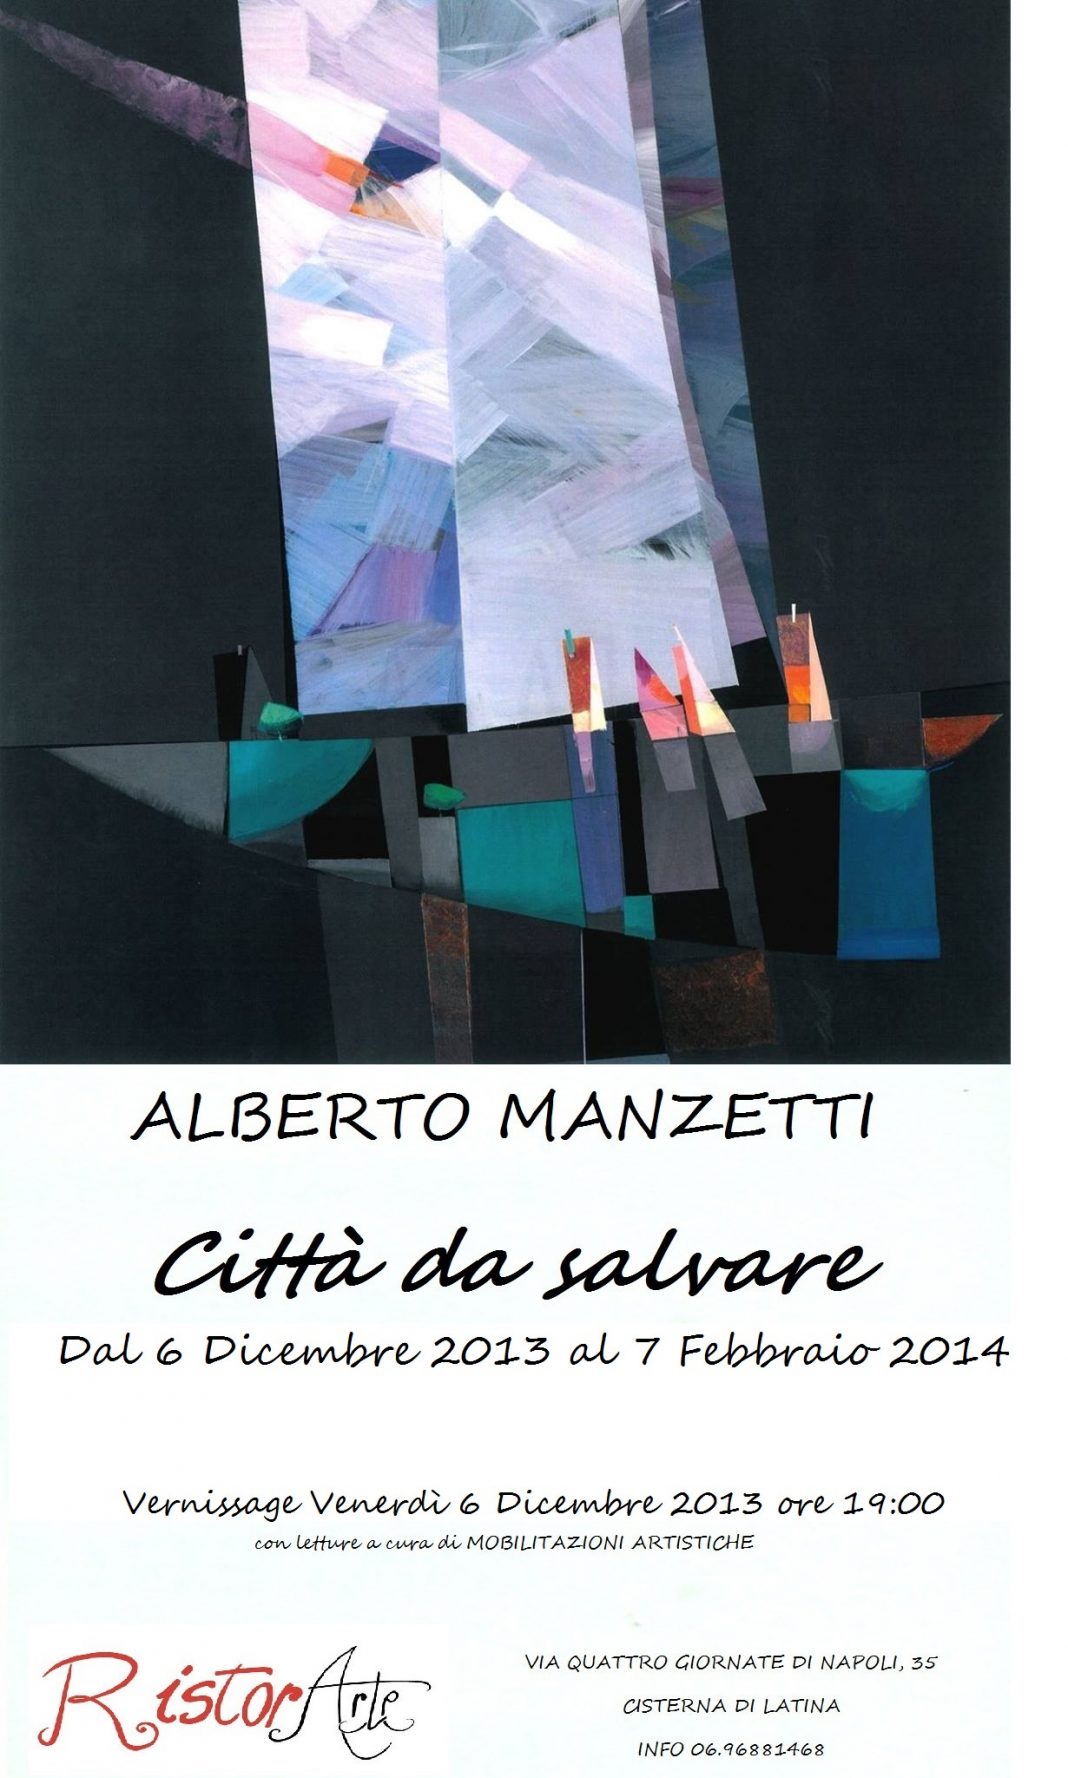 Alberto Manzetti – Città da salvarehttps://www.exibart.com/repository/media/eventi/2013/12/alberto-manzetti-8211-città-da-salvare-1-1068x1778.jpg